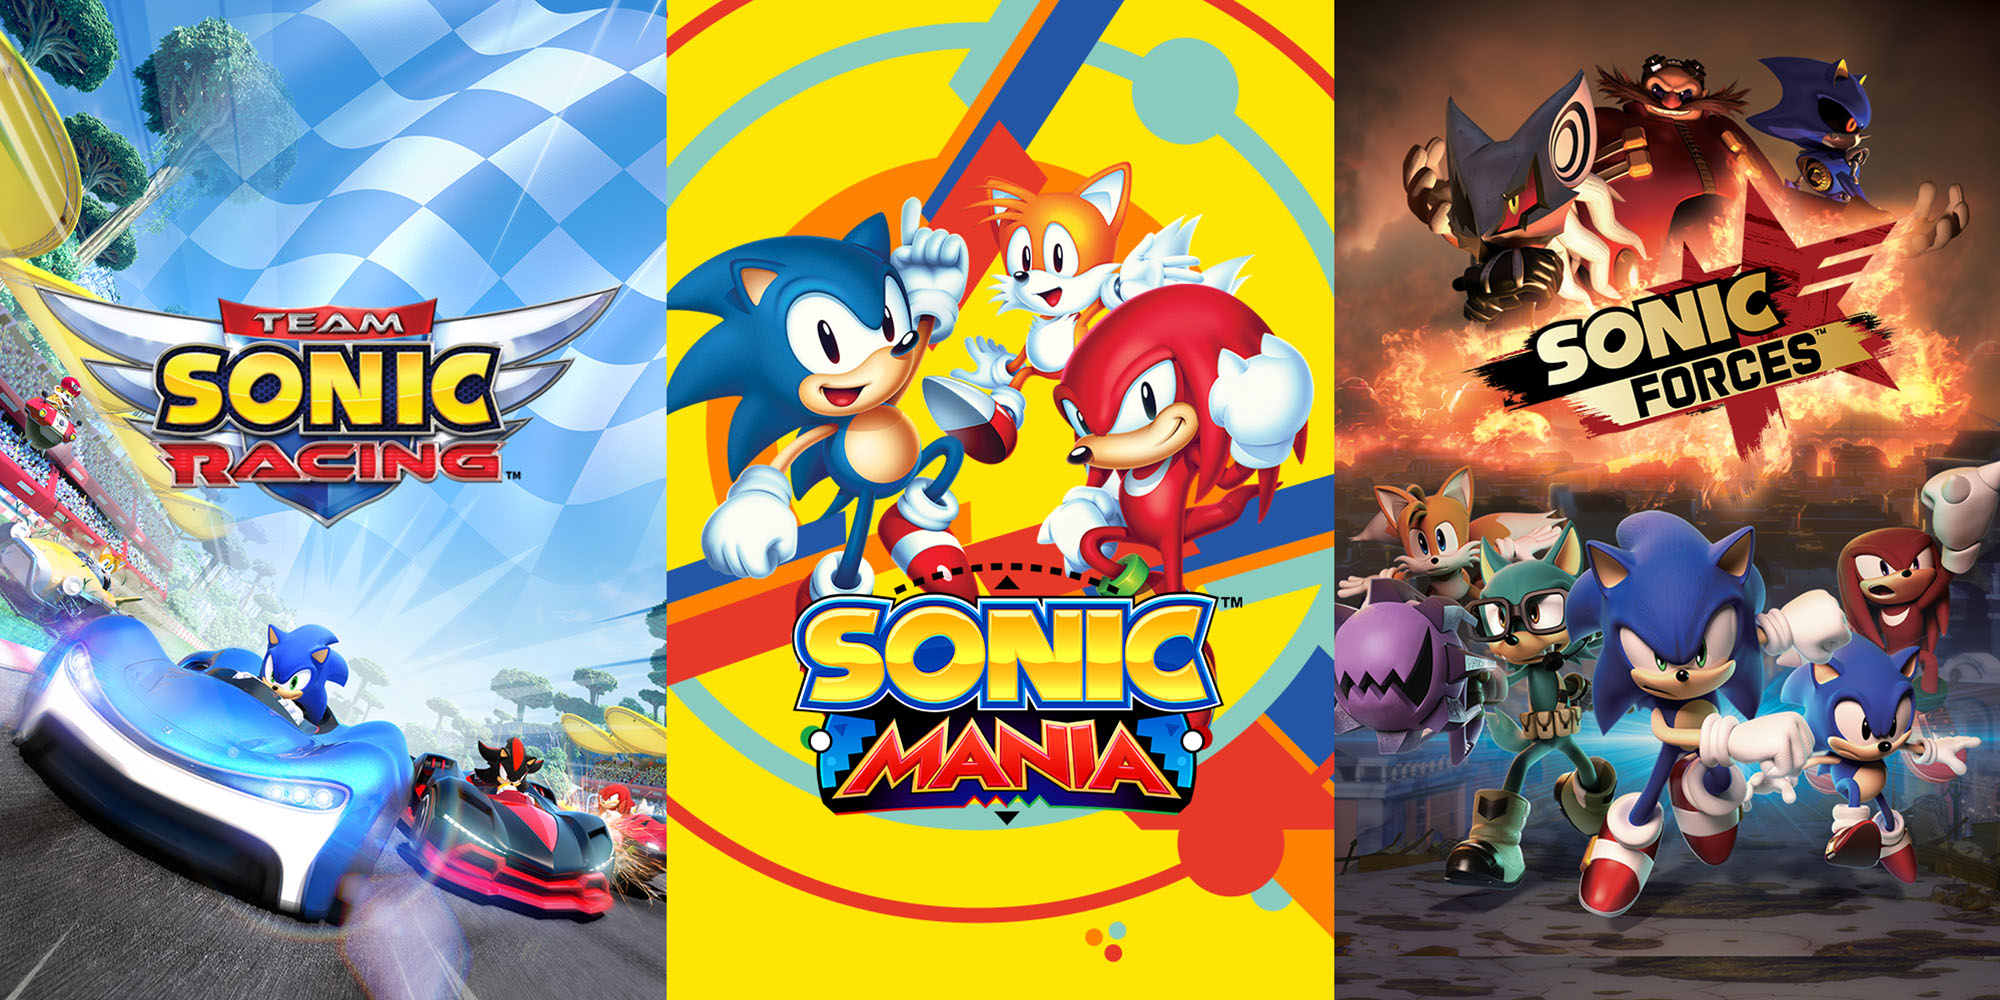 Jogue Sonic moderno no Sonic 3 gratuitamente sem downloads